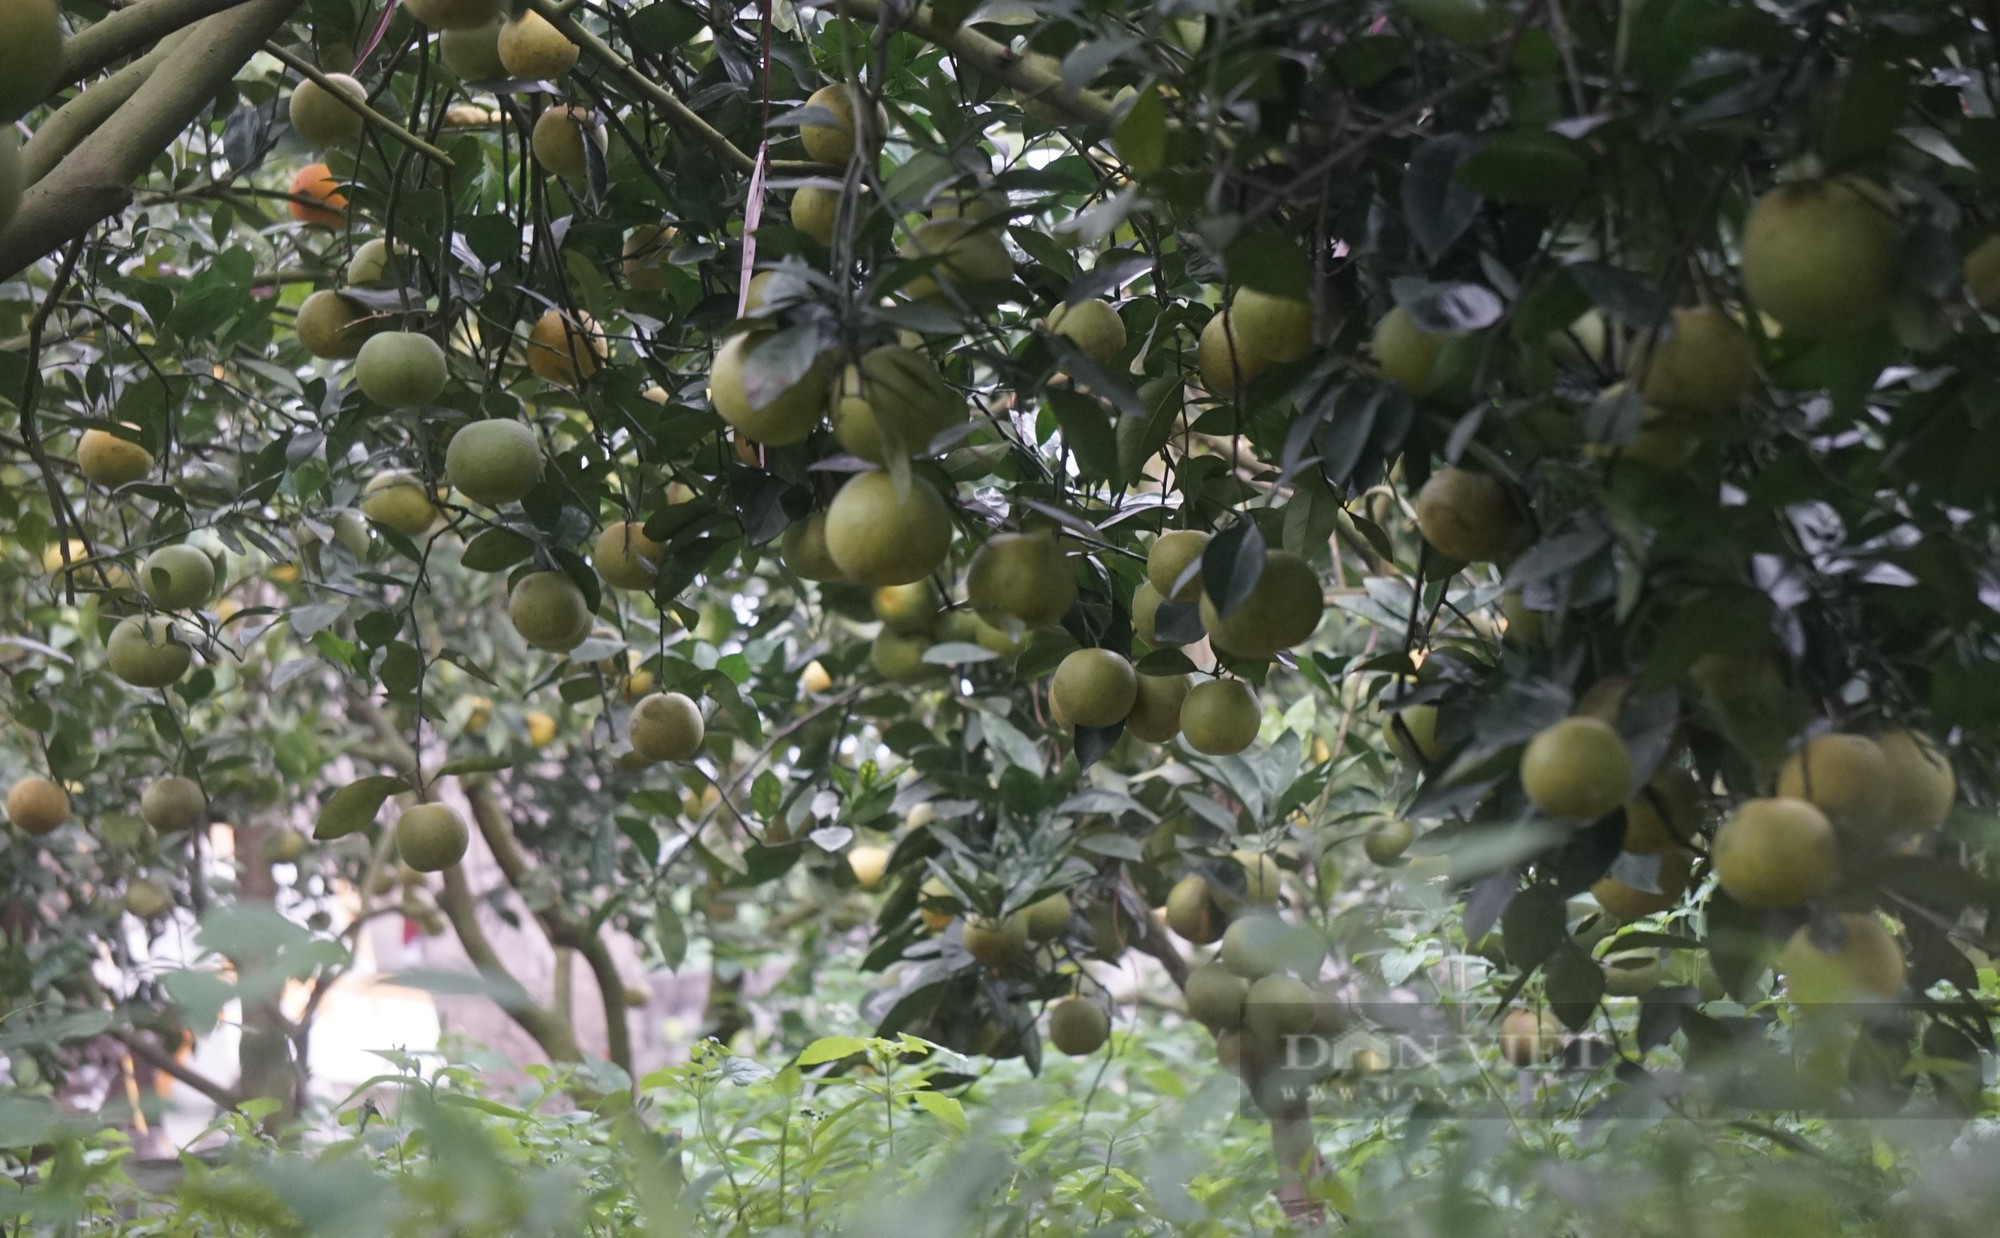 Loại cam đặc sản nức tiếng ở Nghệ An mỗi quả giá 80.000 đồng đang treo trên cây khách đã đến đặt mua - Ảnh 2.